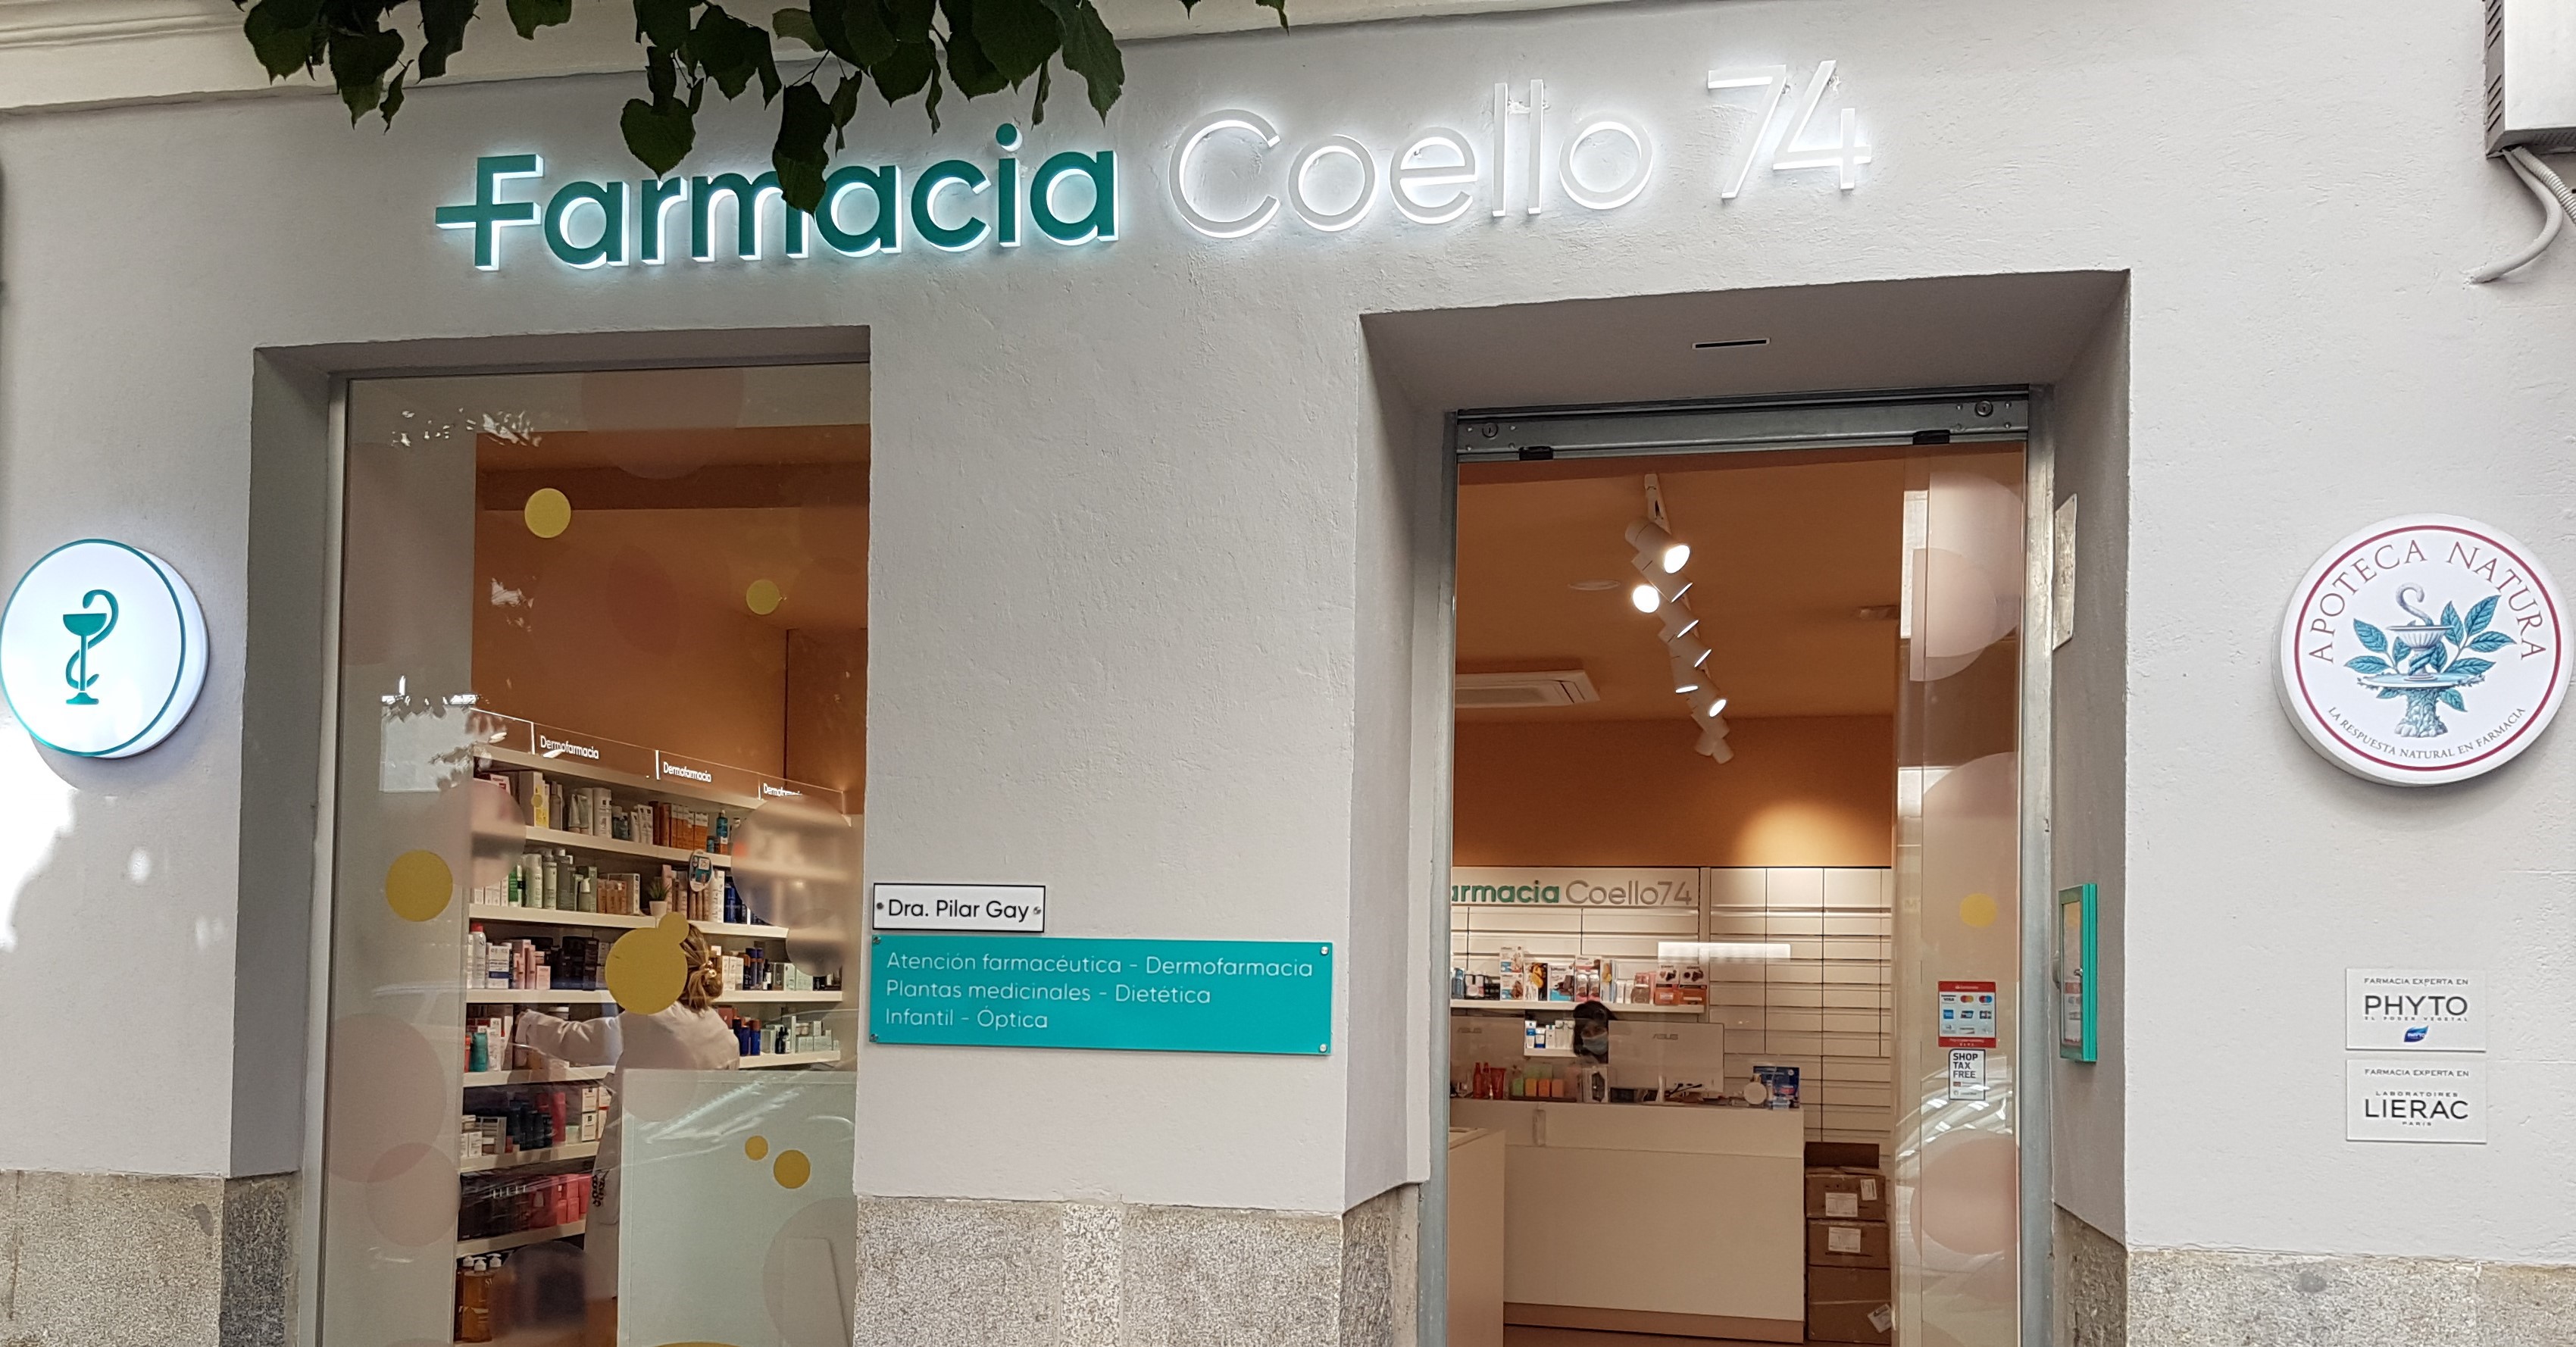 Farmacia Coello 74